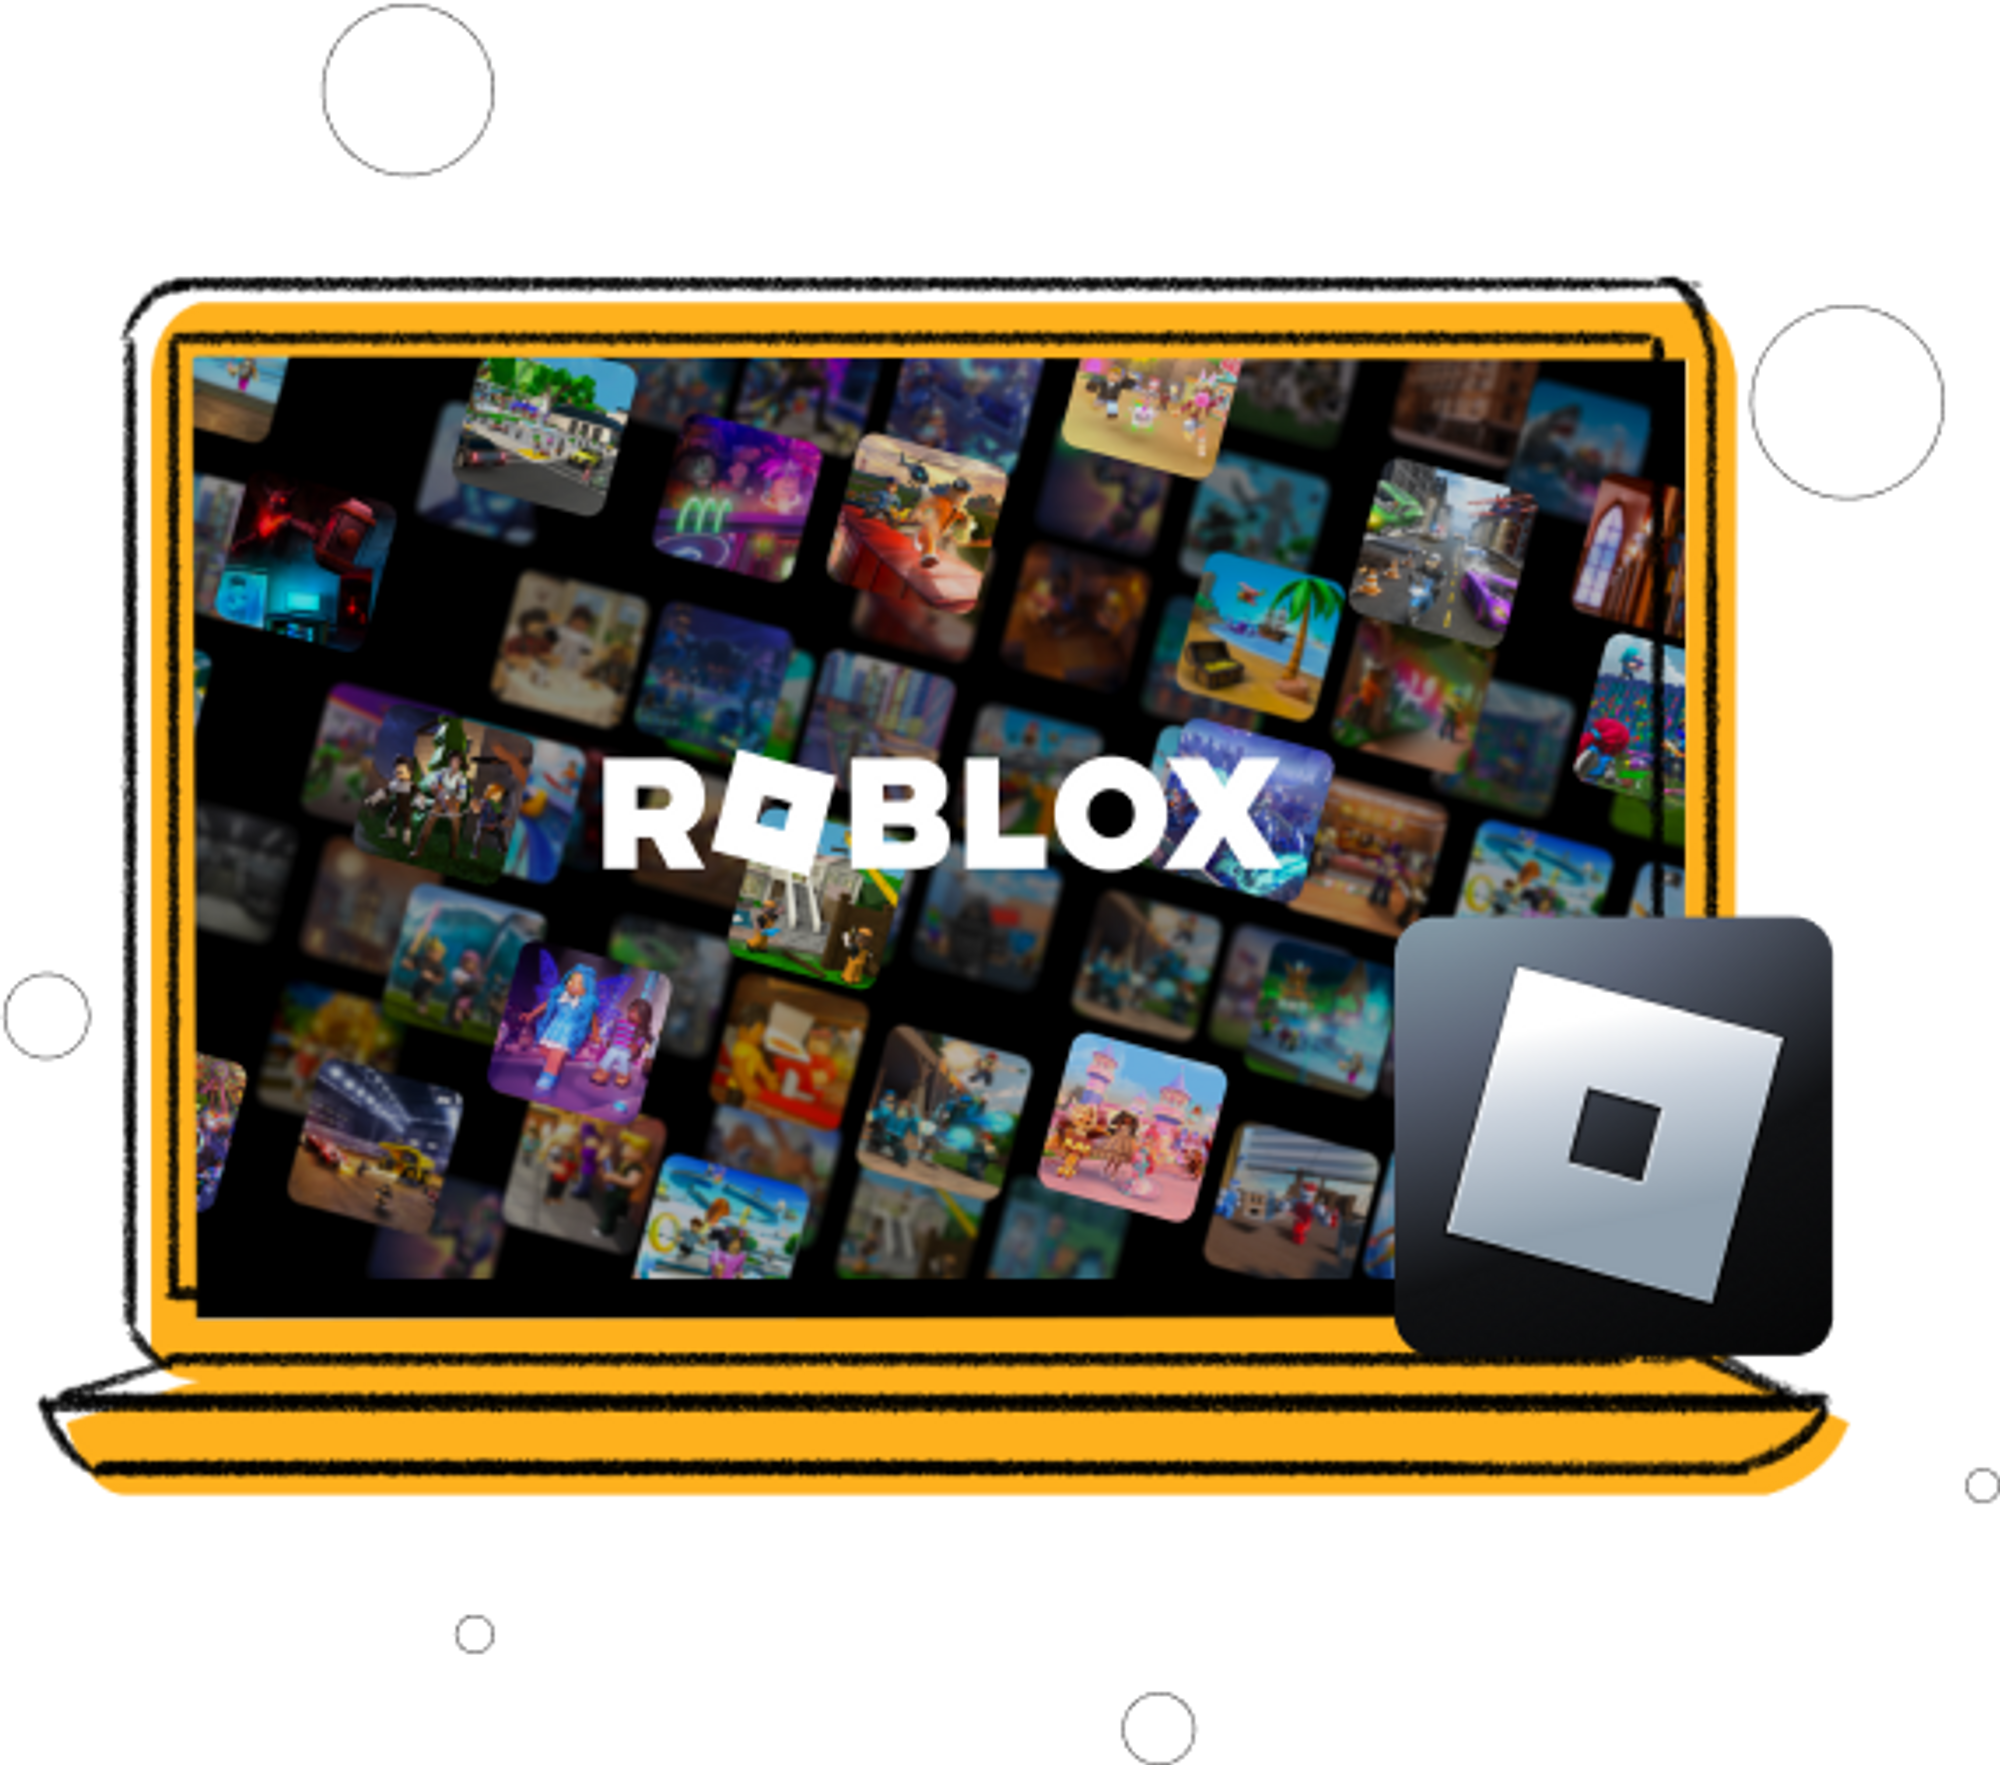 Roblox extension compatibility fixer